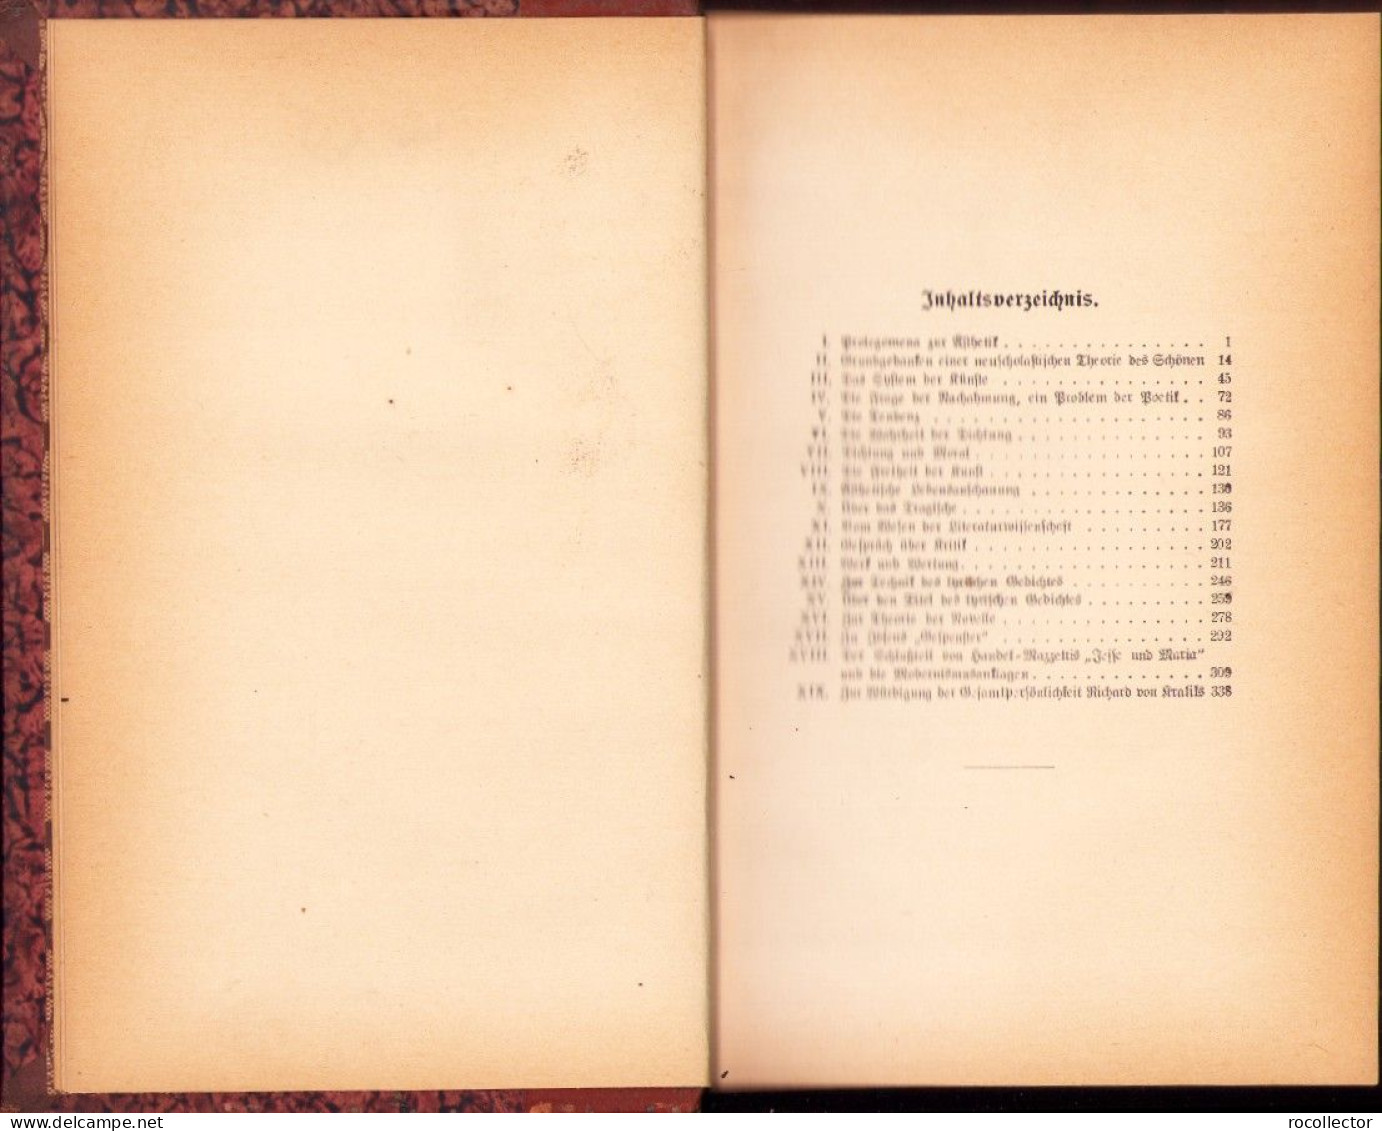 Ästhetisch-literarische Arbeiten Von Oskar Katann, 1918 C3434 - Alte Bücher